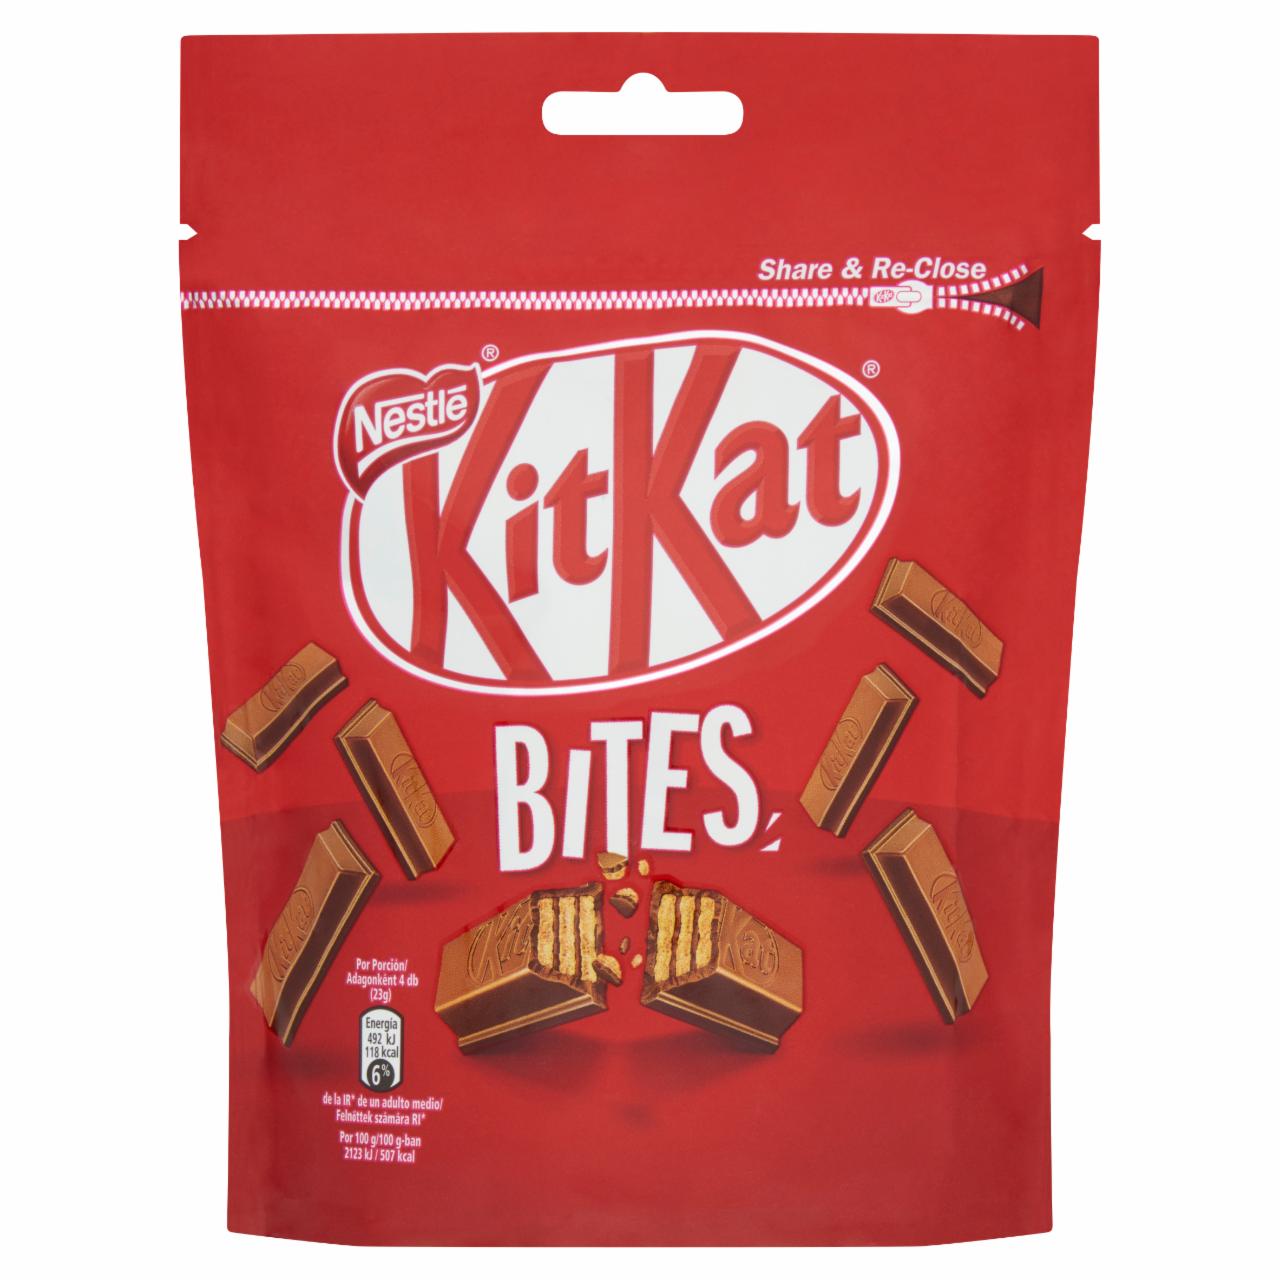 Képek - KitKat Bites ropogós ostya tejcsokoládéban 104 g